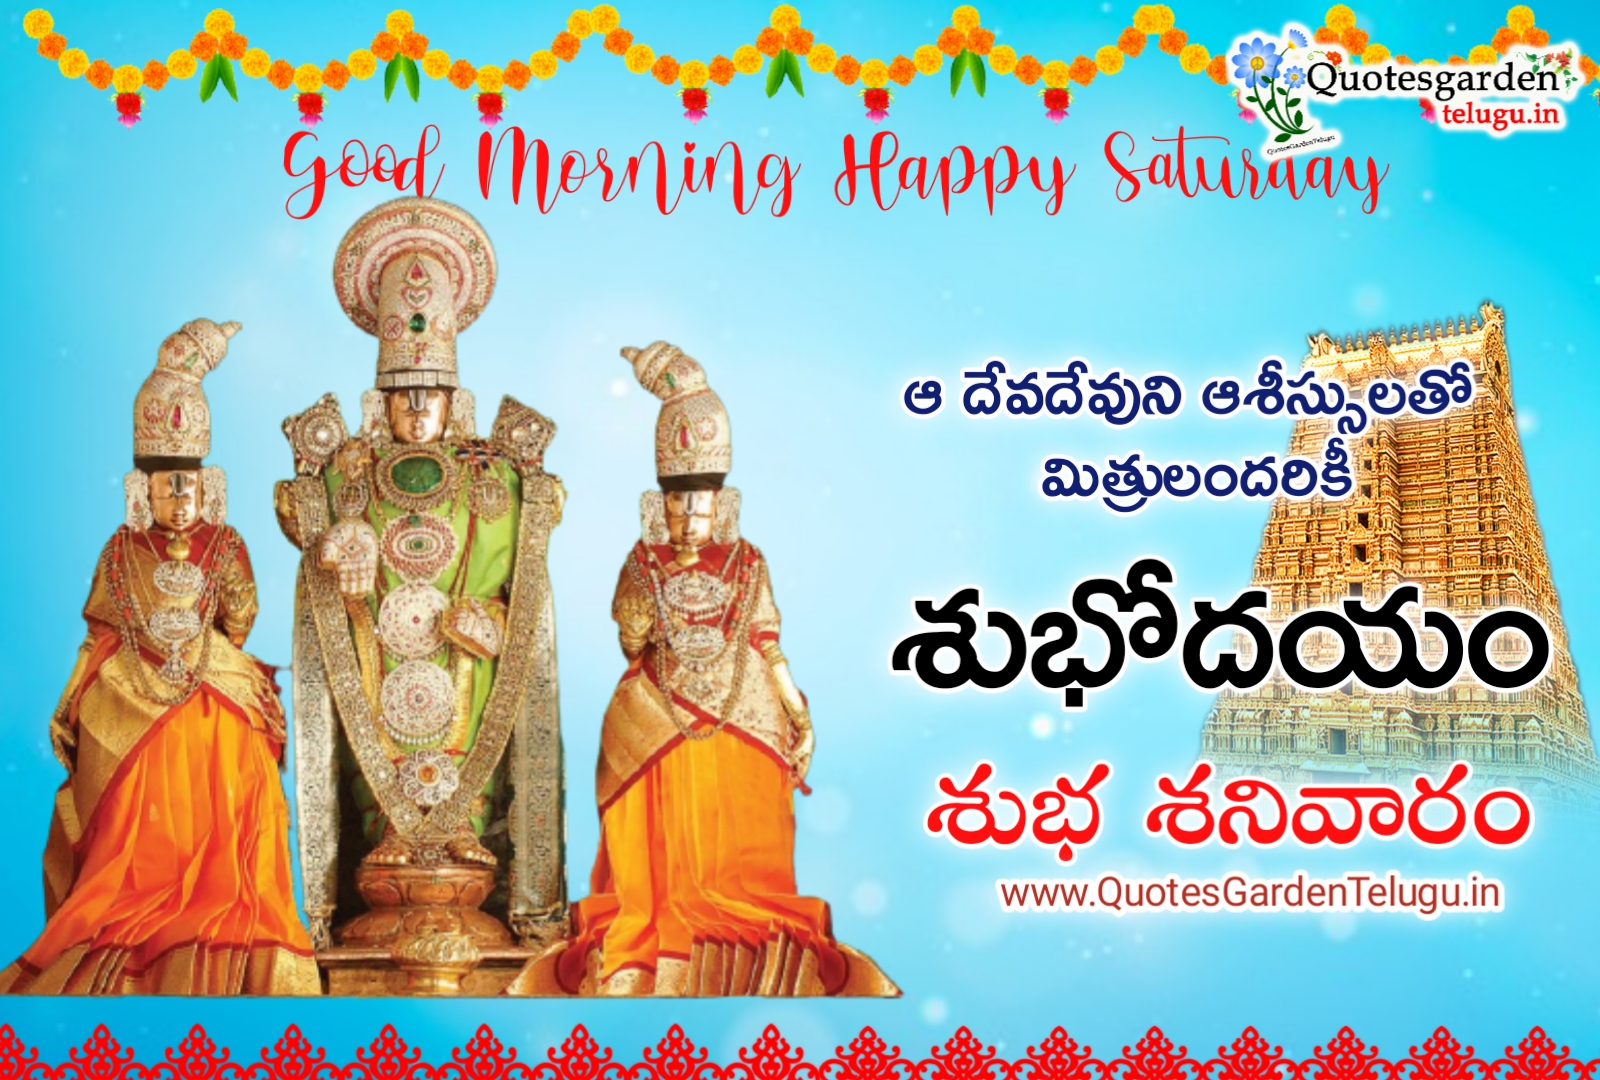 good morning Saturday quotes in Telugu | QUOTES GARDEN TELUGU ...